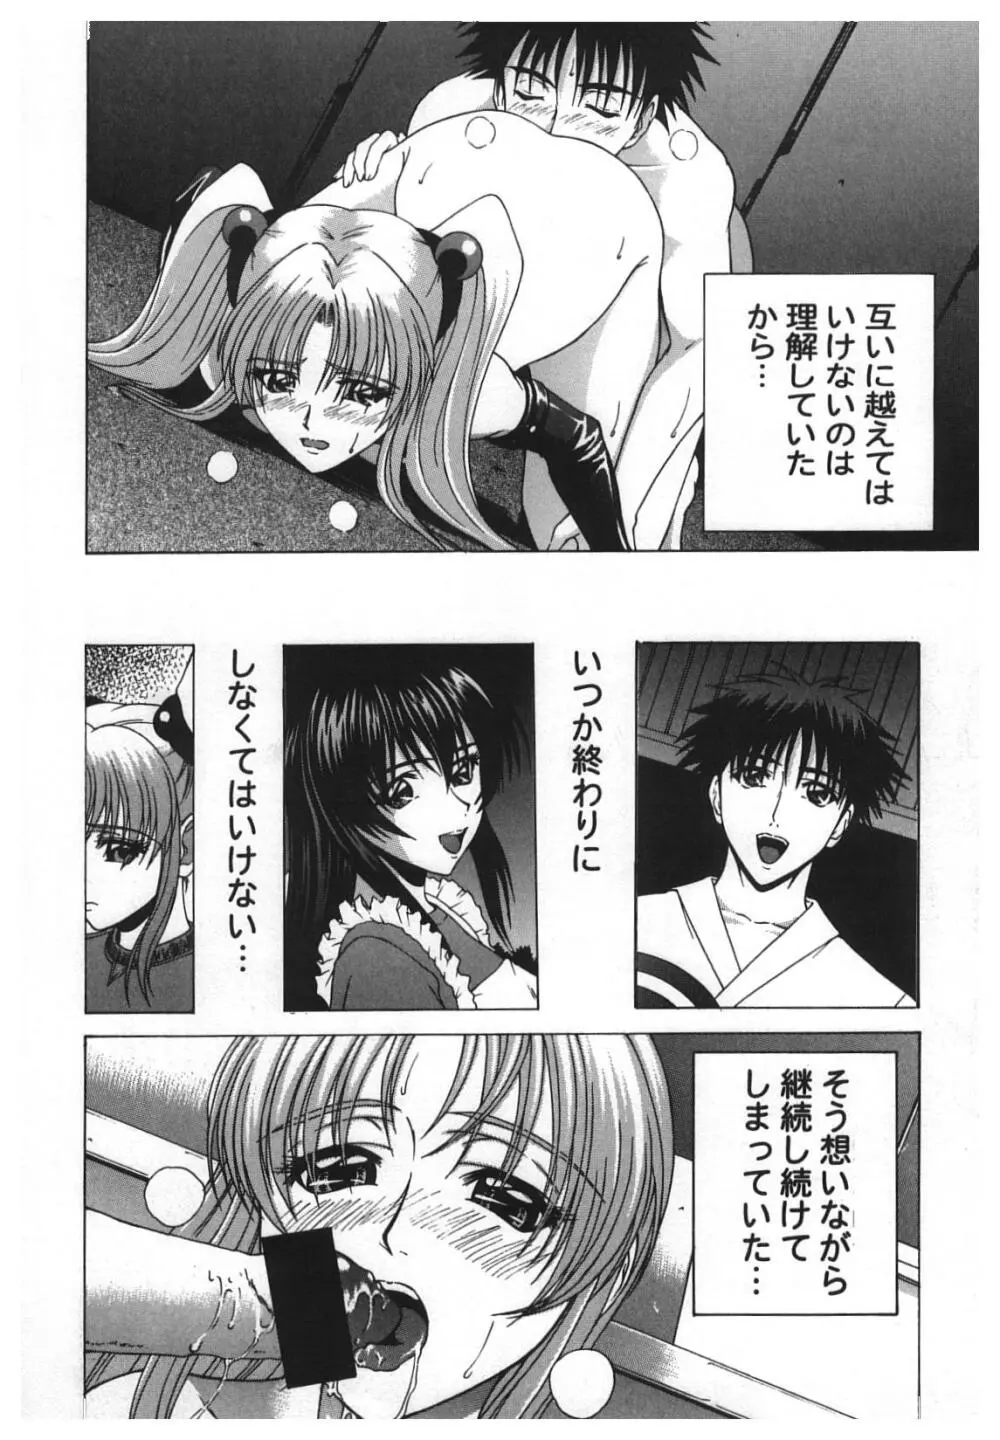 Girl’s Parade 2000 5 44ページ